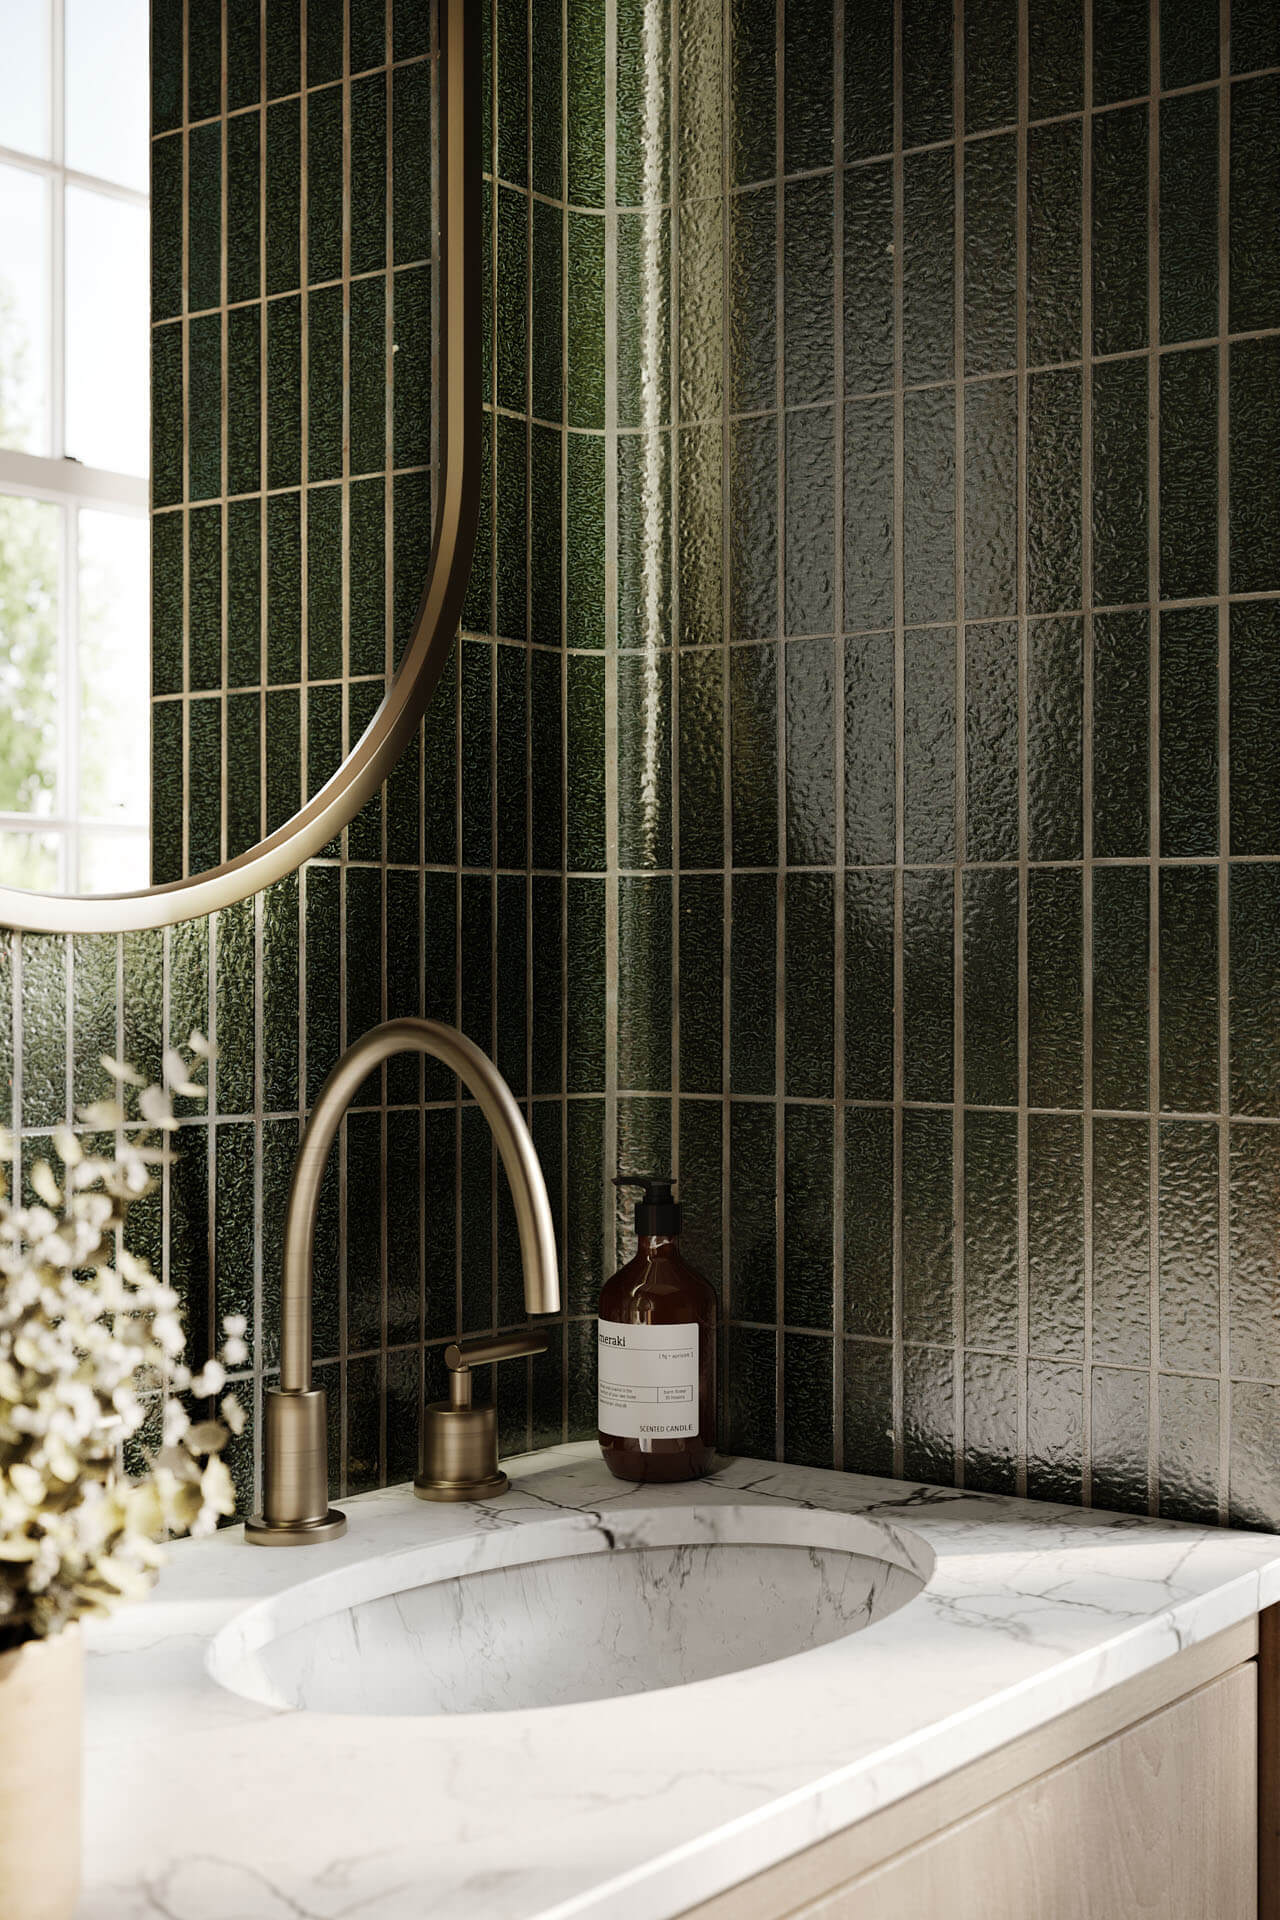 3D Rendering of Green Bathroom Tiles